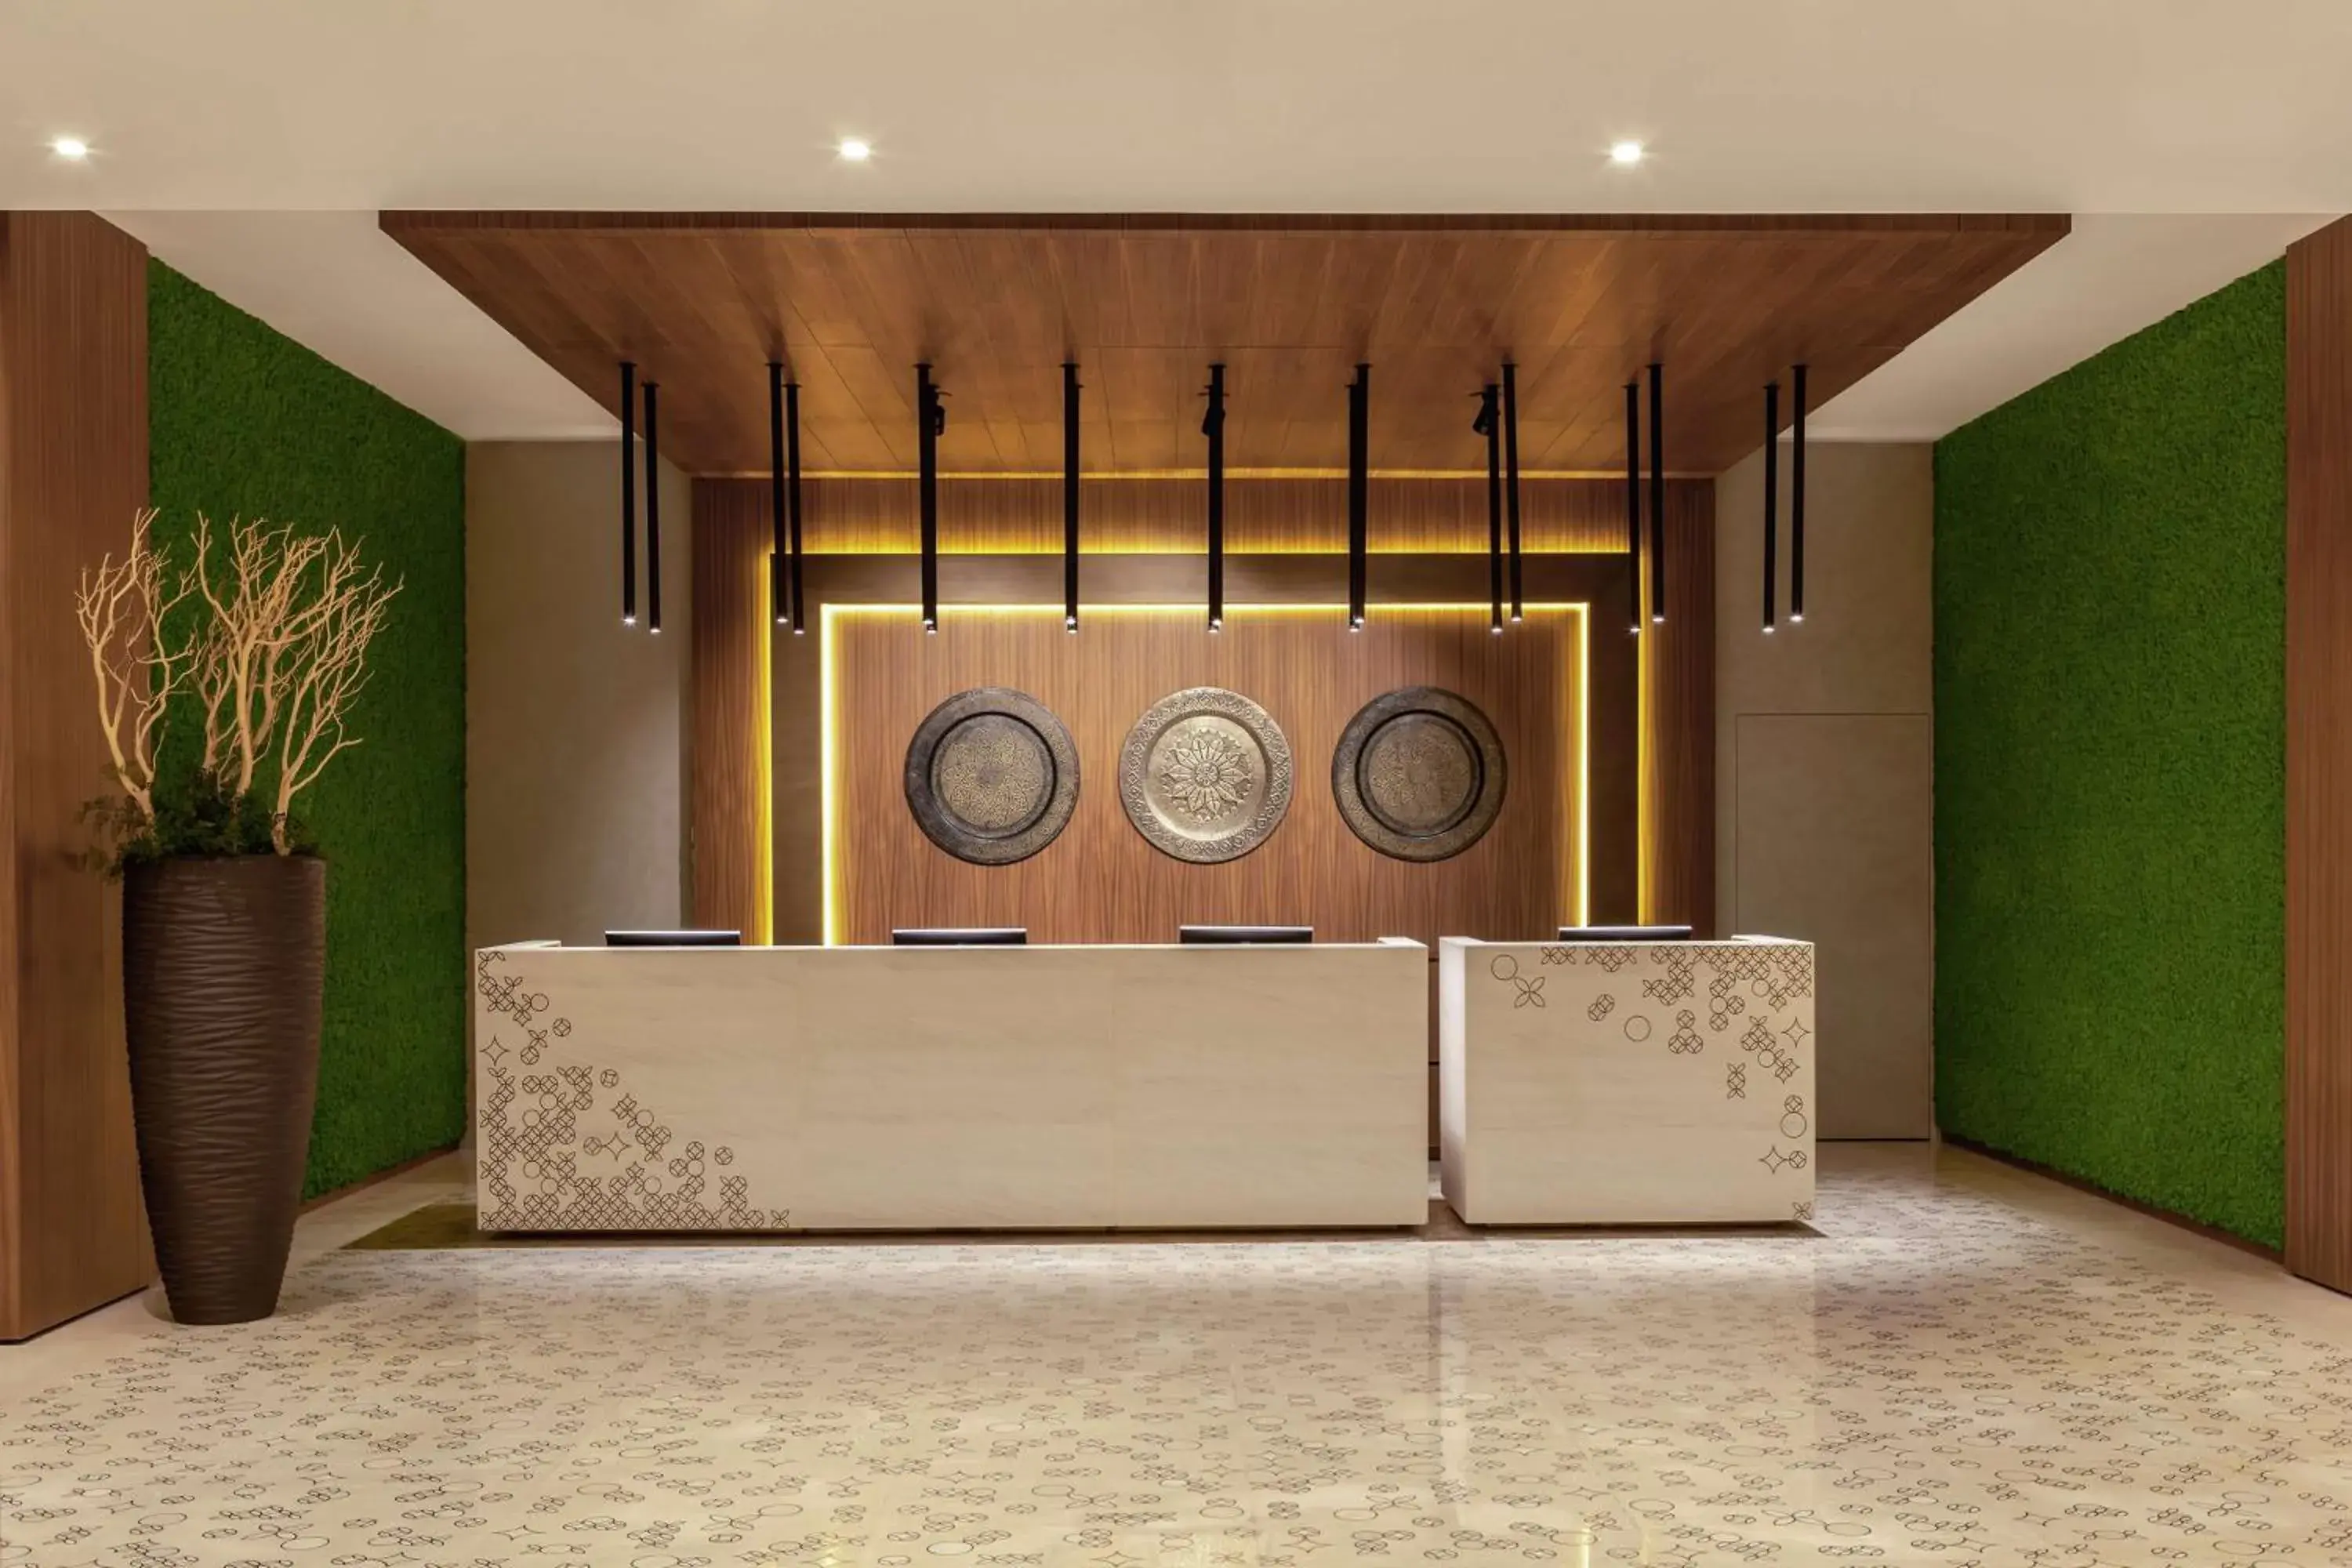 Lobby or reception in DoubleTree by Hilton Dubai Al Jadaf